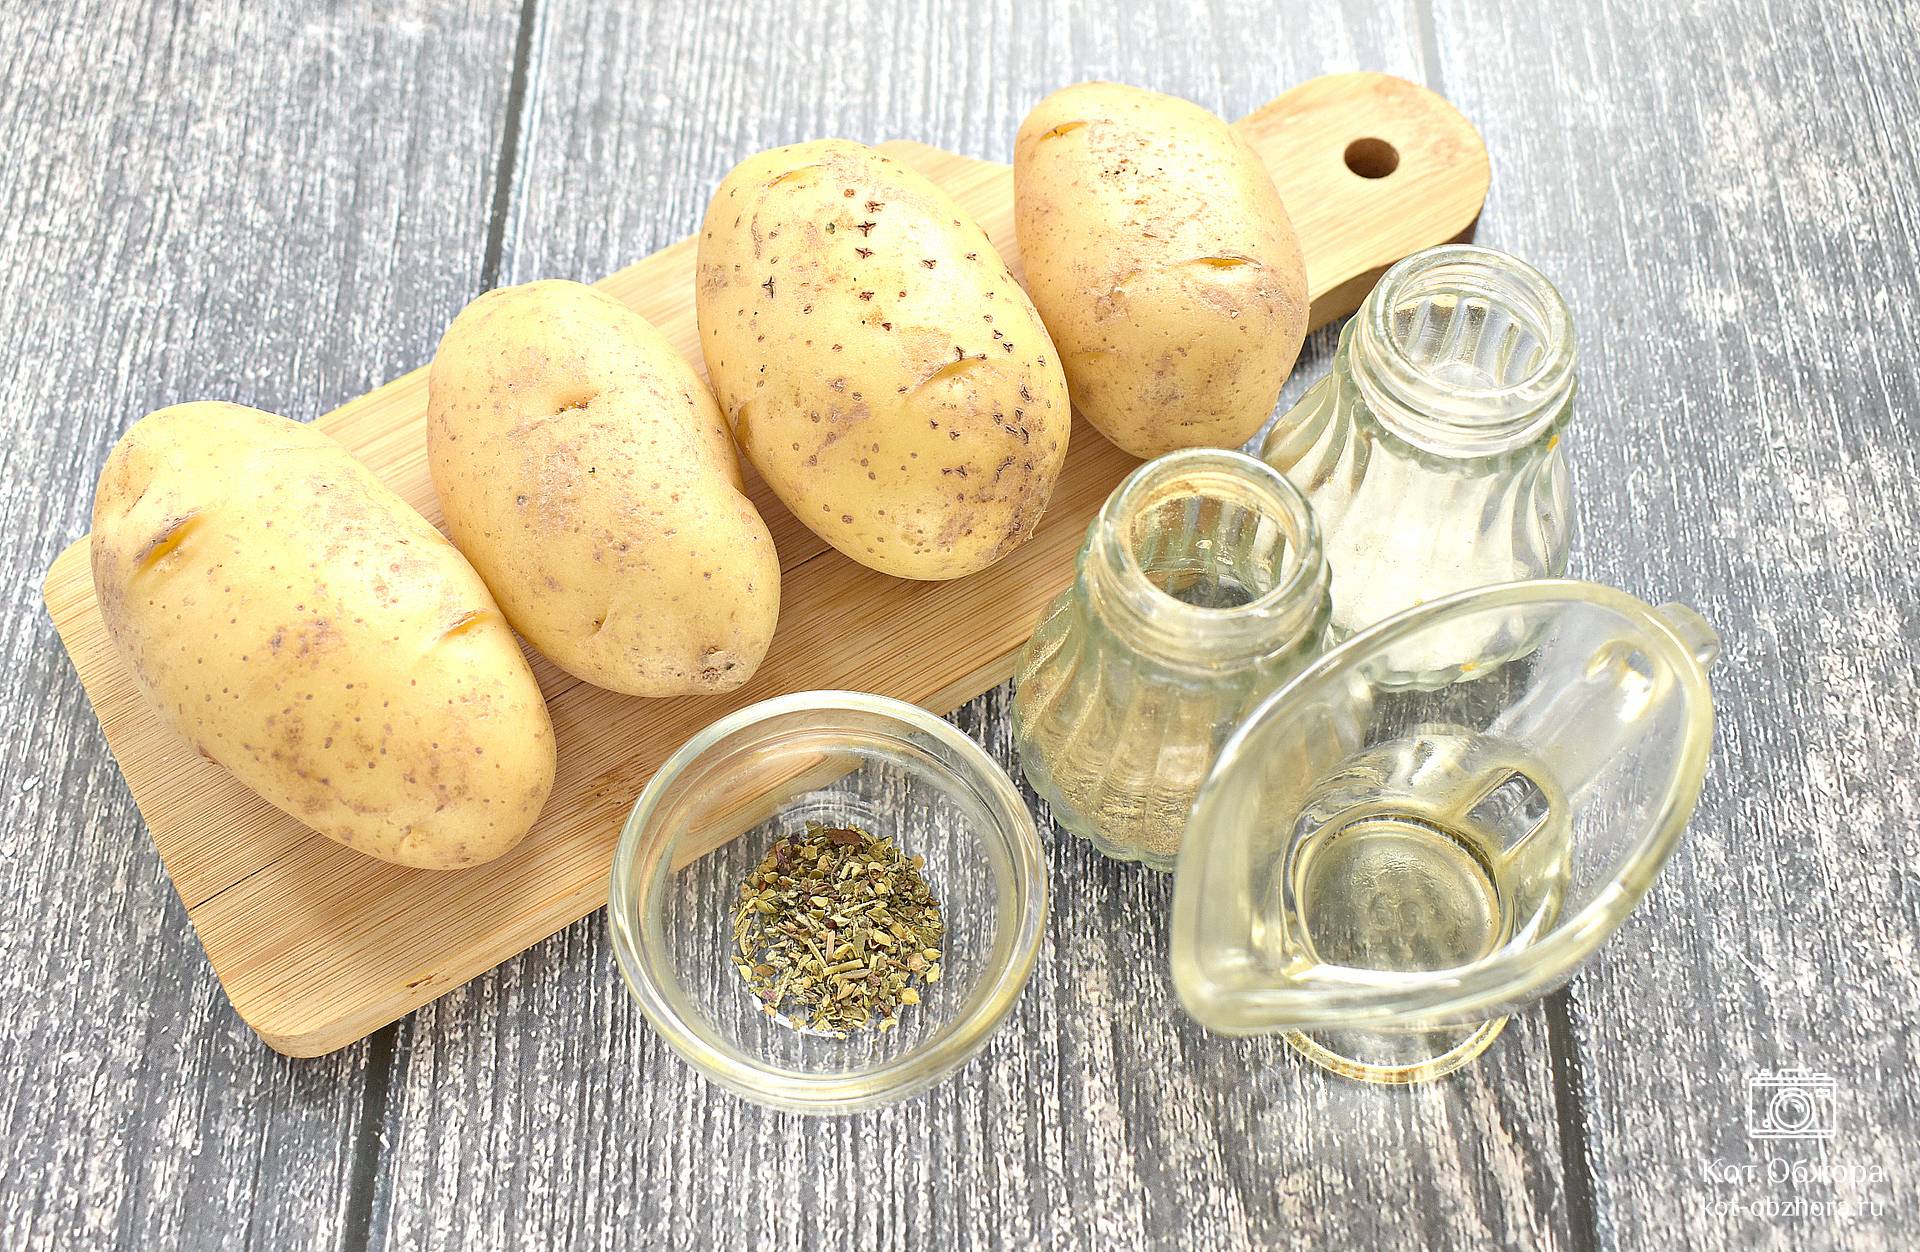 Запеченный картофель в сливках и чесноке (Gratin dauphinoise)